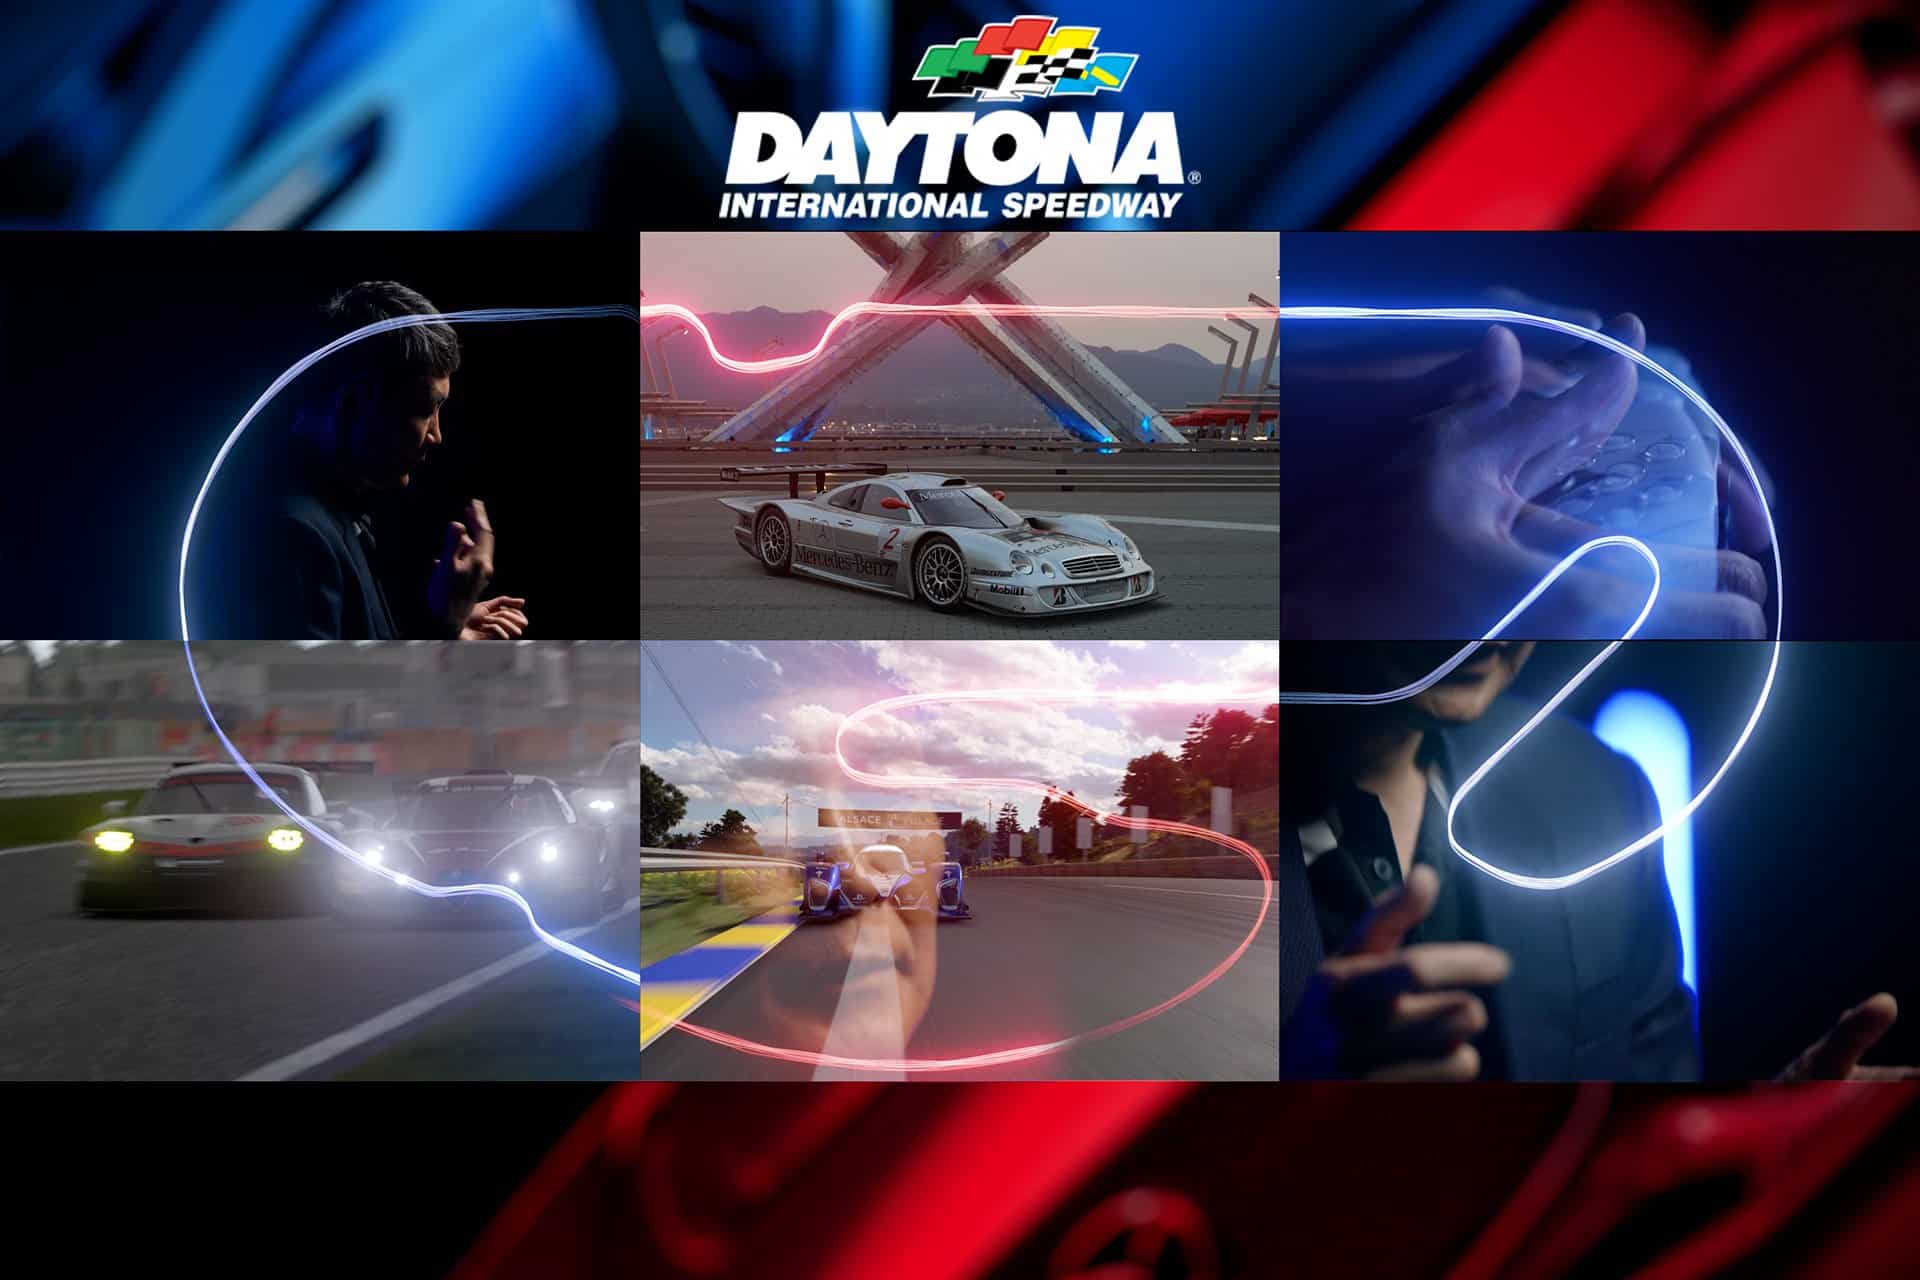 Gran Turismo 7 – Daytona International Speedway